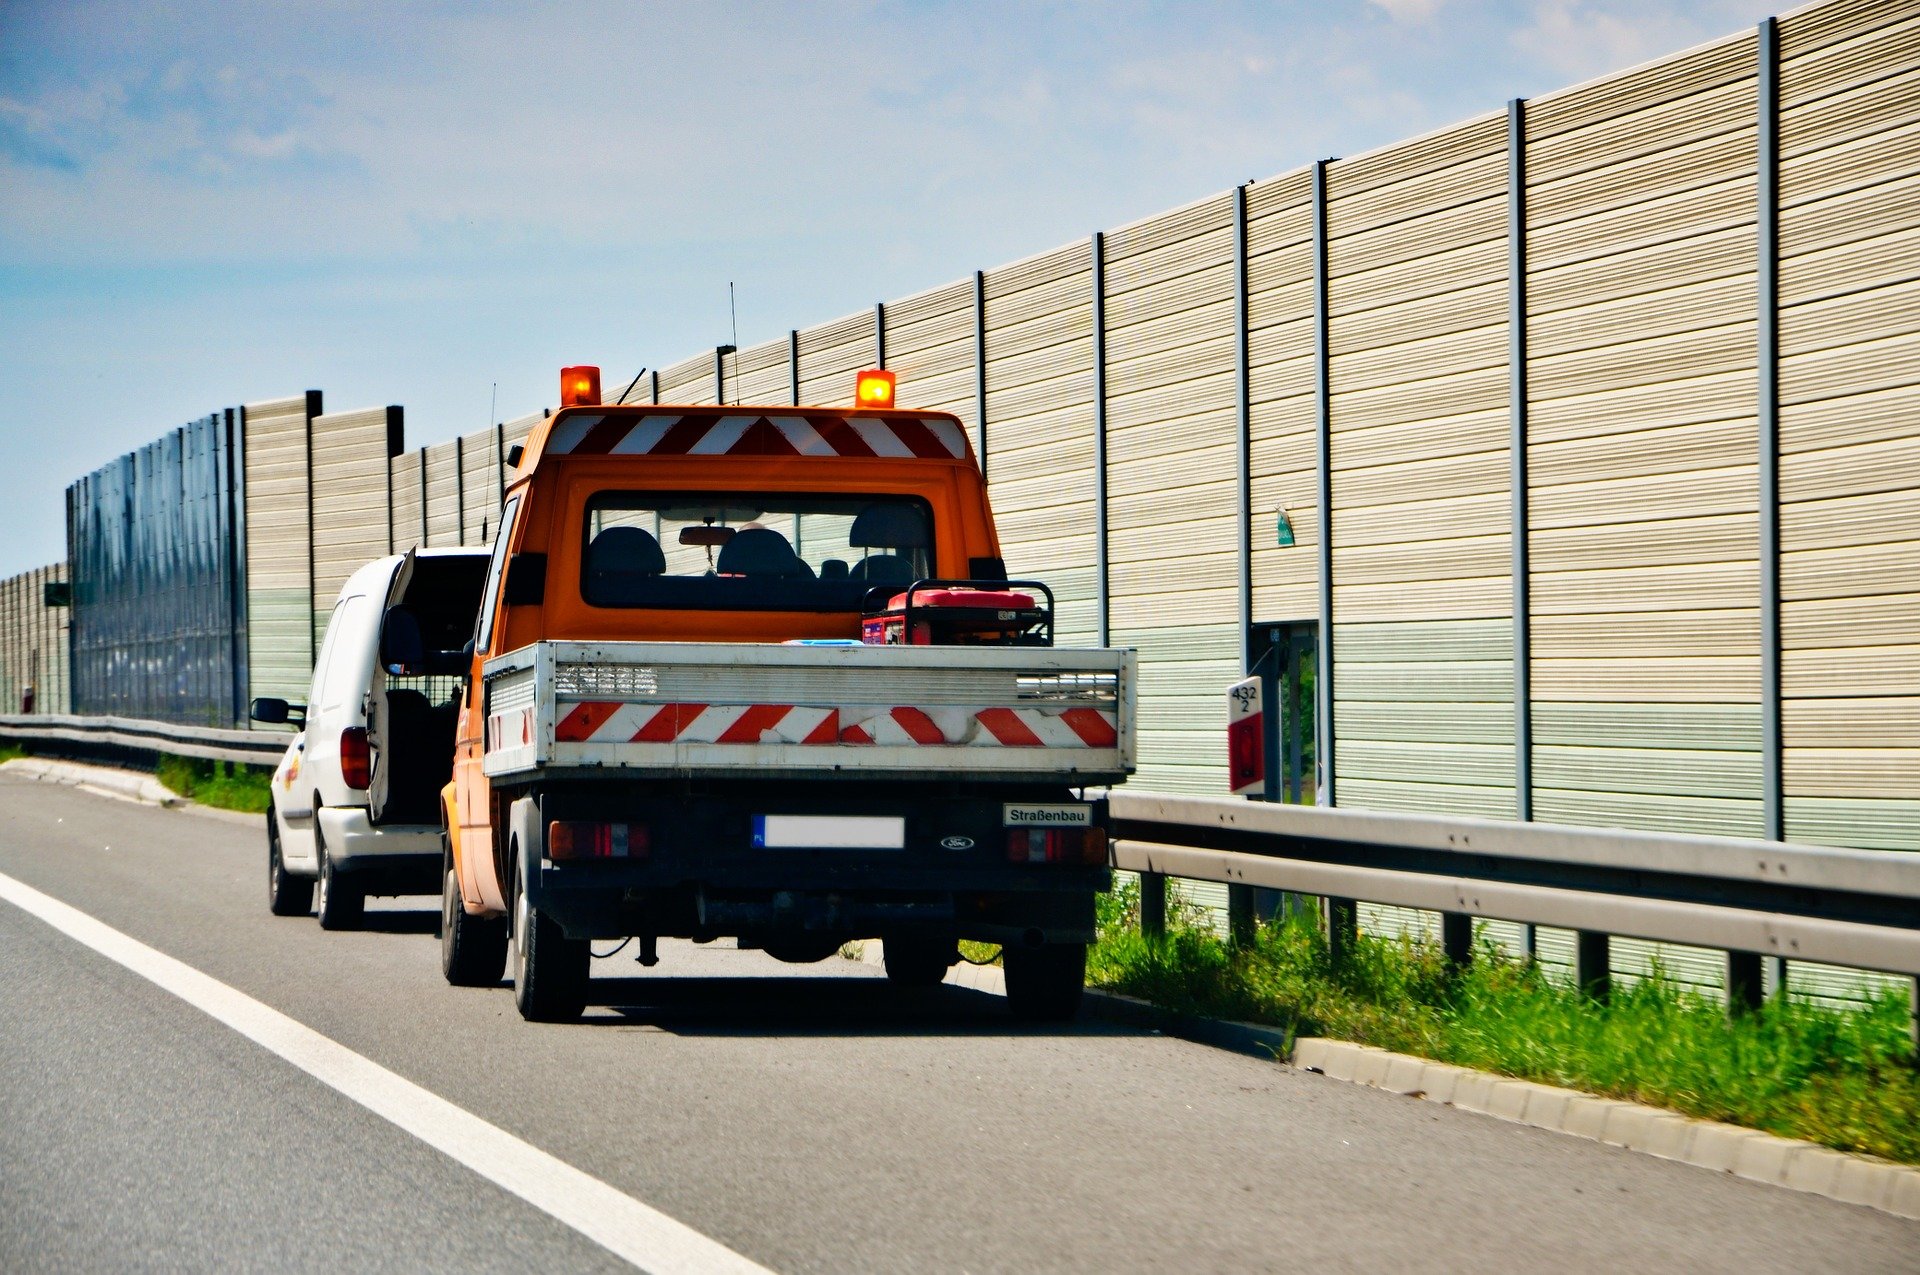 Na oranžový maják mají právo například vozidla vykonávající práci za jízdy nebo vykonávající práci při stojícím vozidle na vozovce nebo krajnici